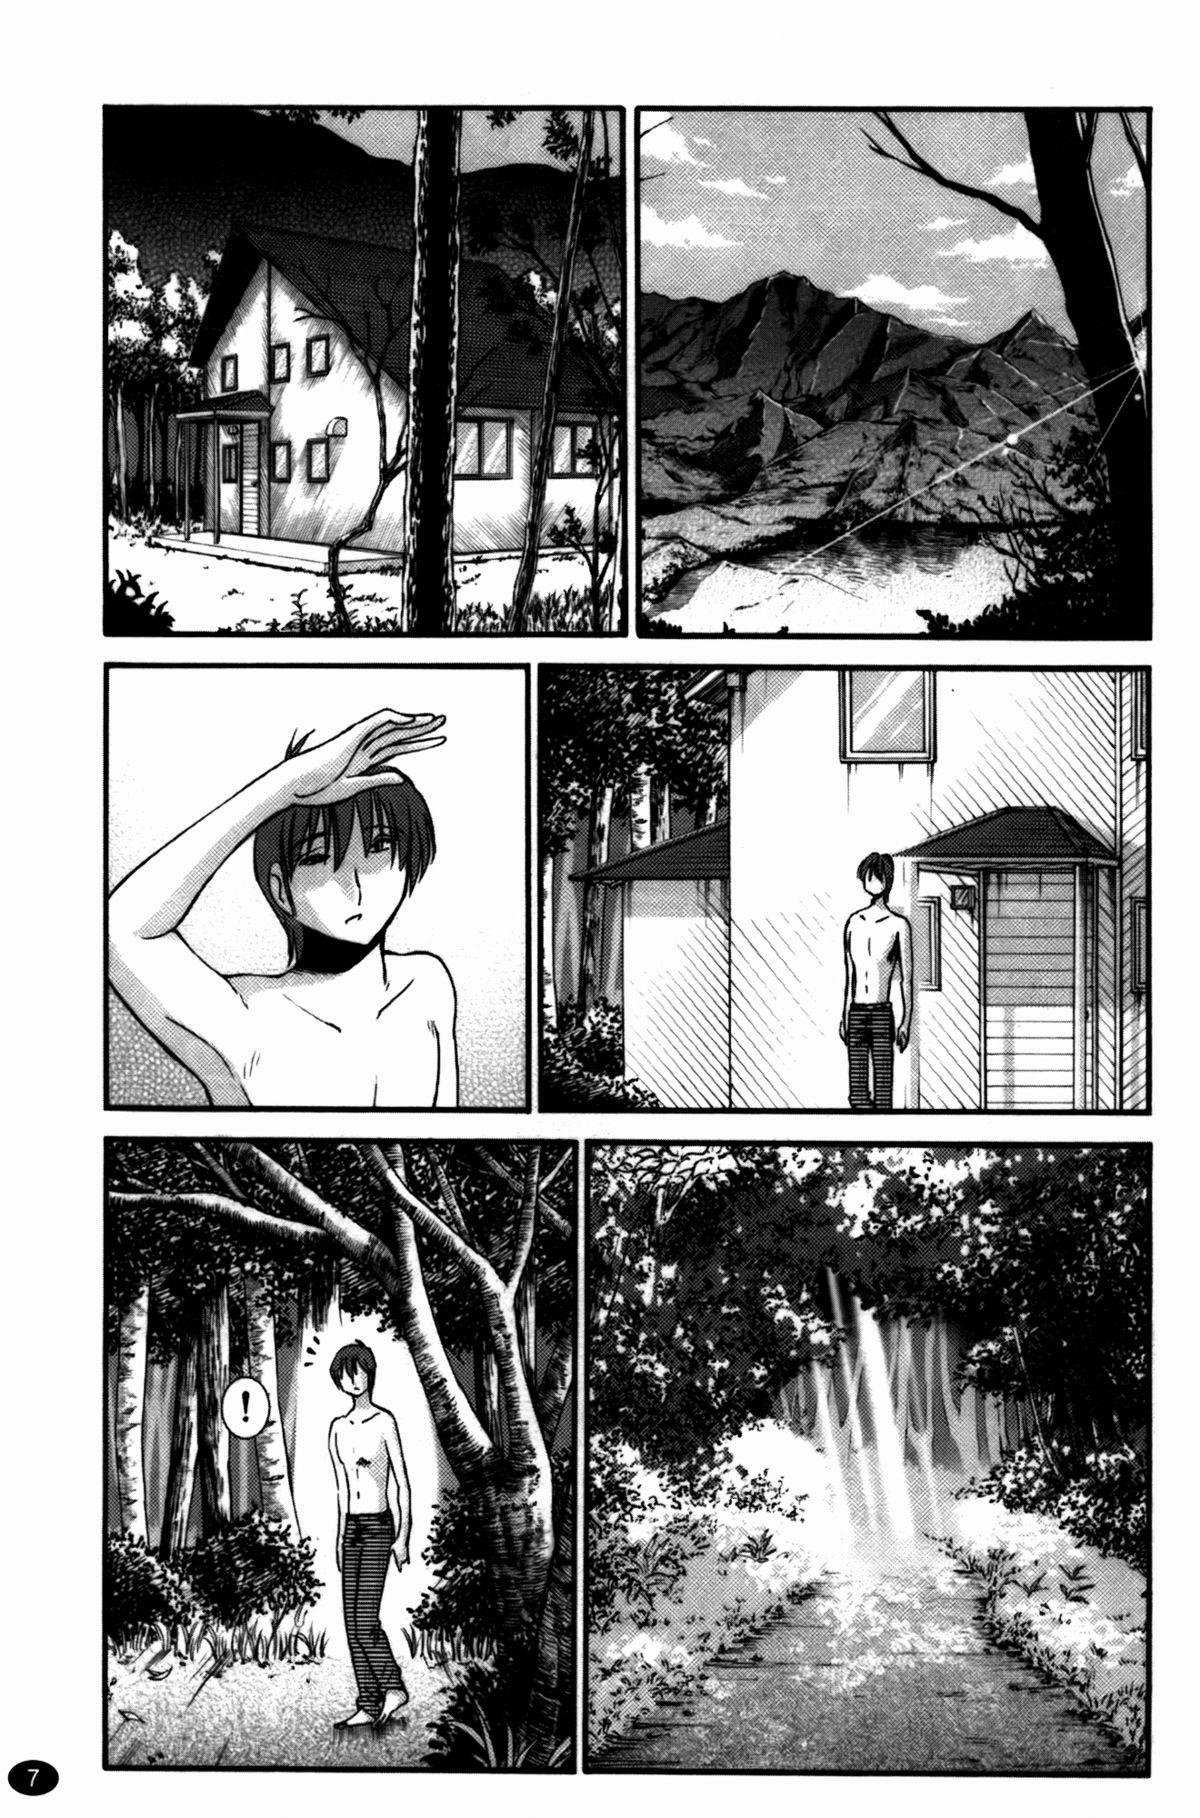 Leche Monokage no Irisu Volume 3 Chapter 17 Cdzinha - Page 8